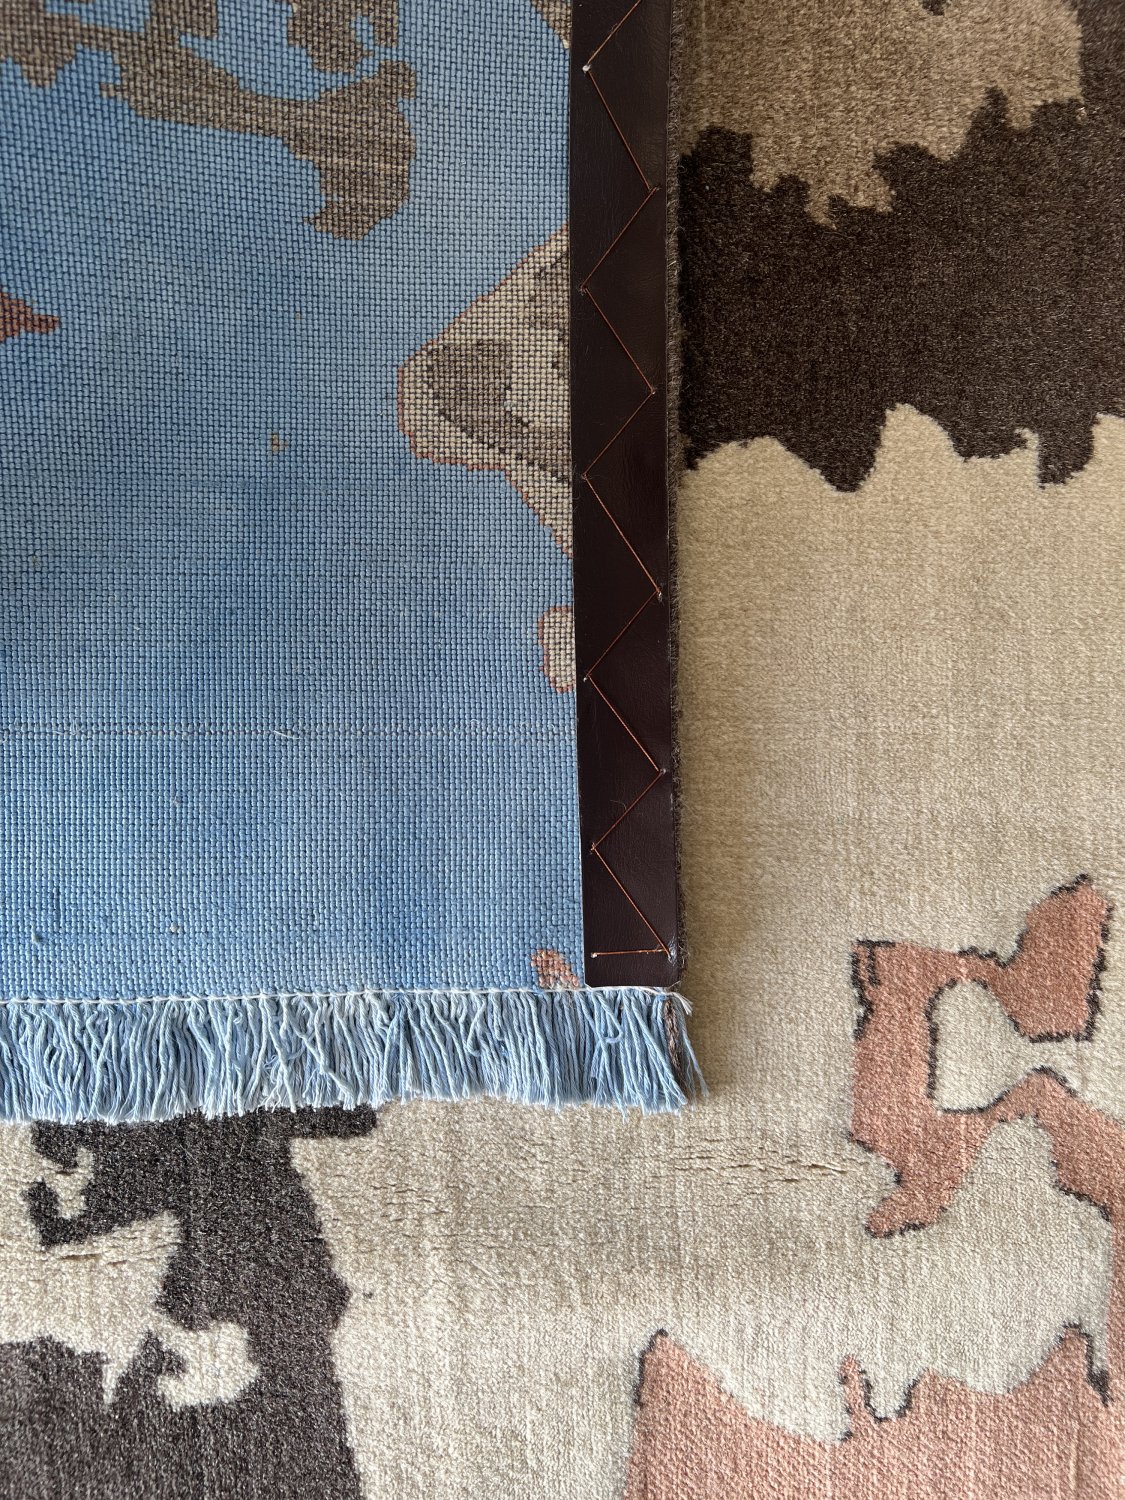 فرش پشمی ماشینی طبیعی و ارگانیک کد 0037 - زمینه آبی کم رنگ - حاشیه کرم